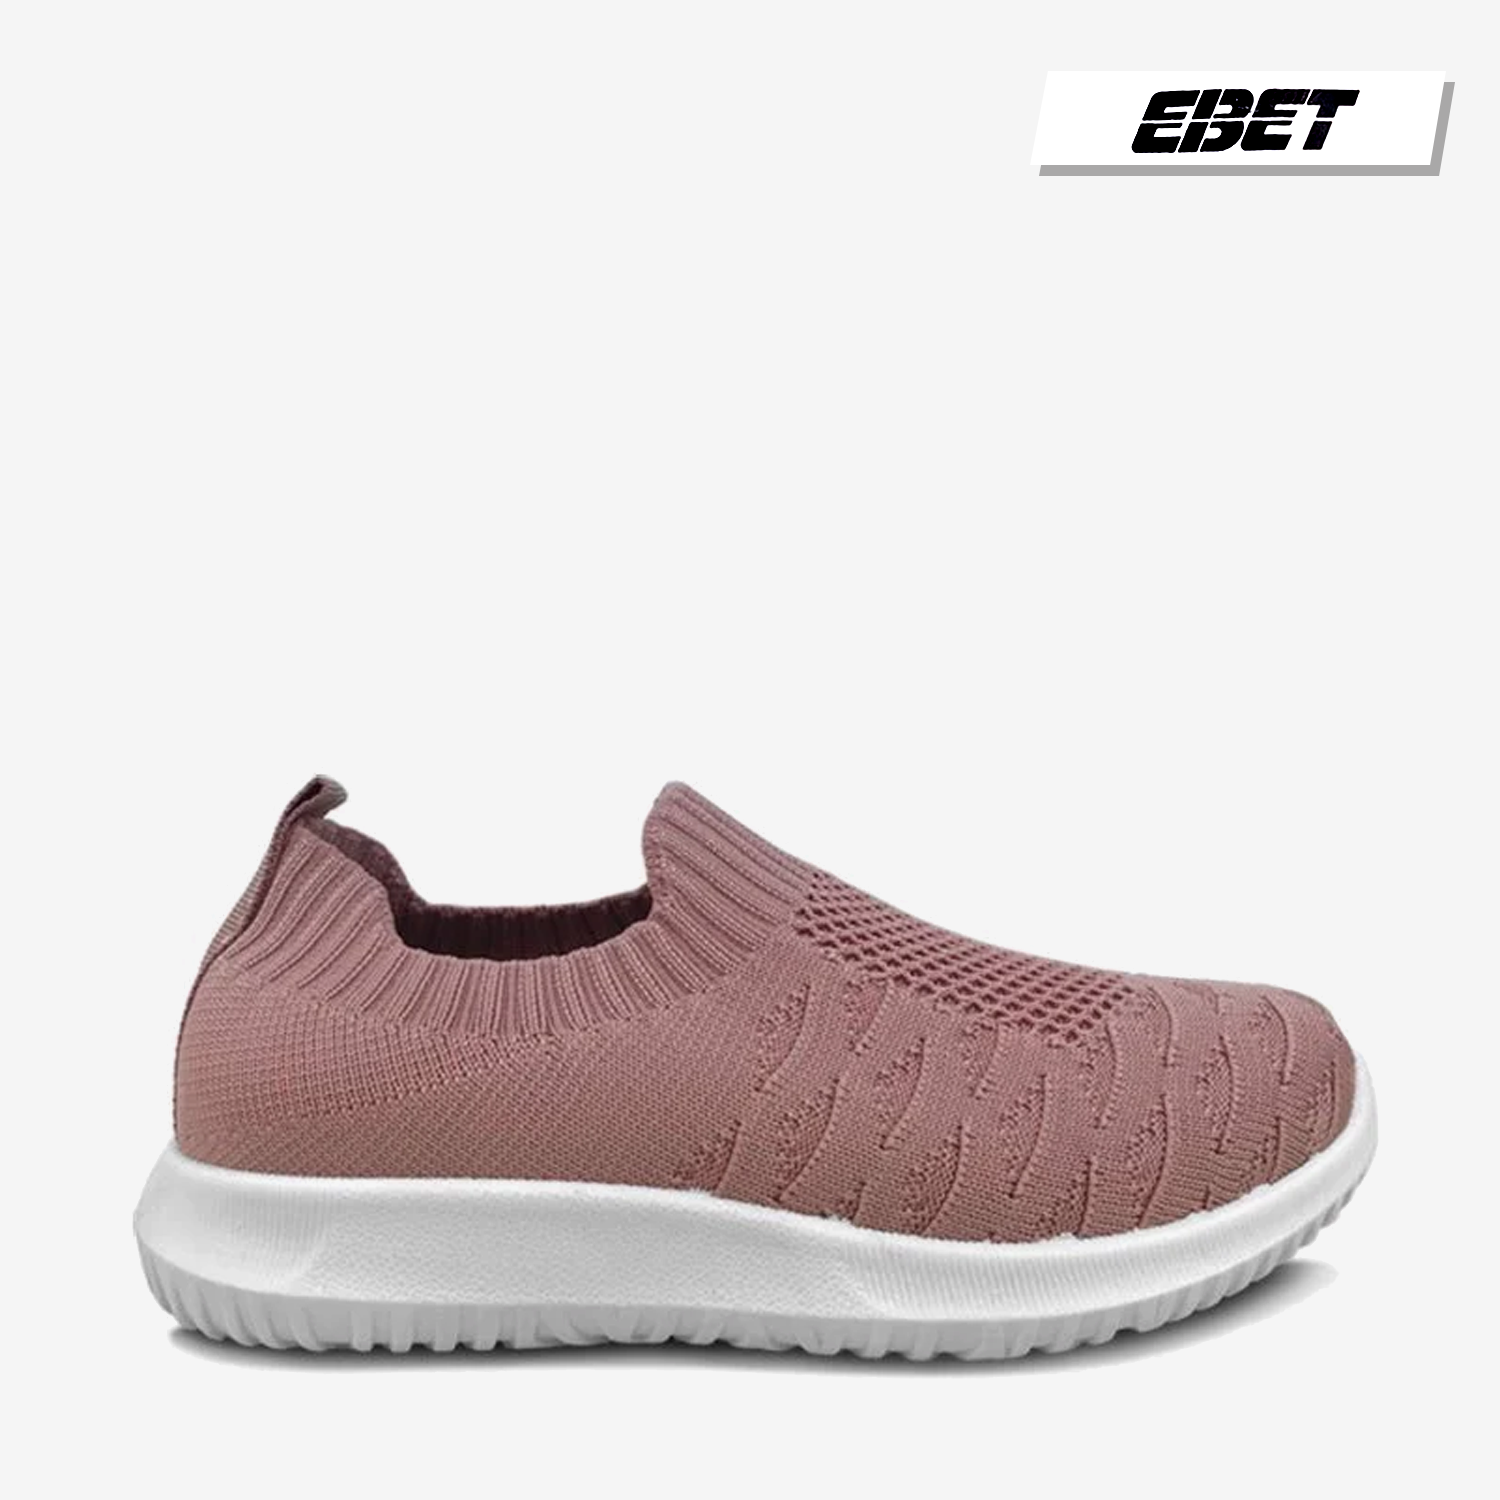  Giày thể thao Ebet 6518 